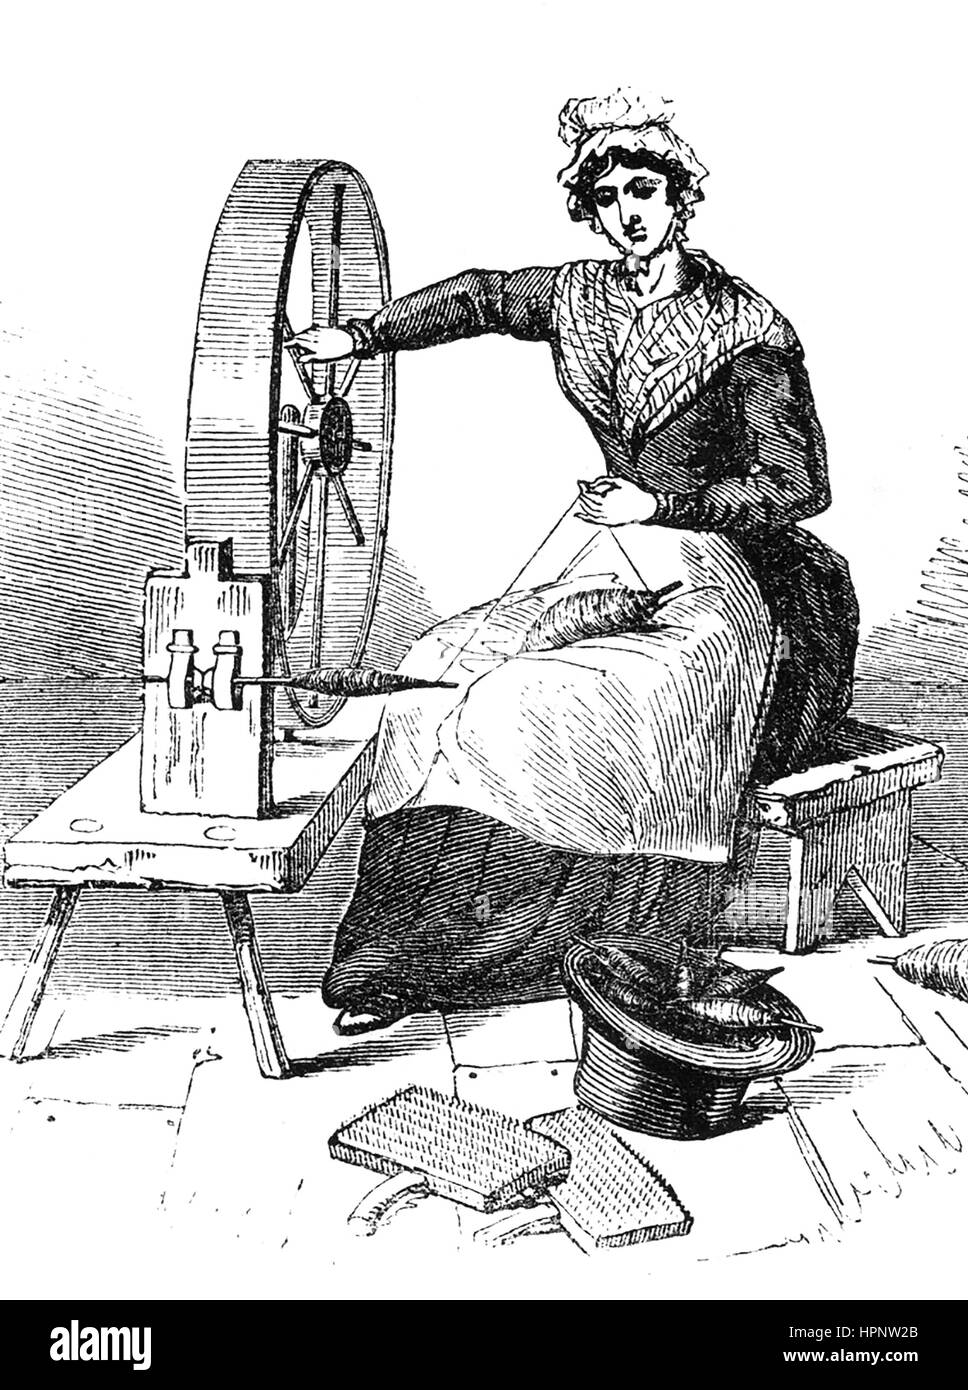 JERSEYWHEEL utilisé pour la filature du coton et de la laine et remplacé  par les machines, comme la machine à filer pendant la révolution  industrielle. Environ 1800 Gravure Photo Stock - Alamy